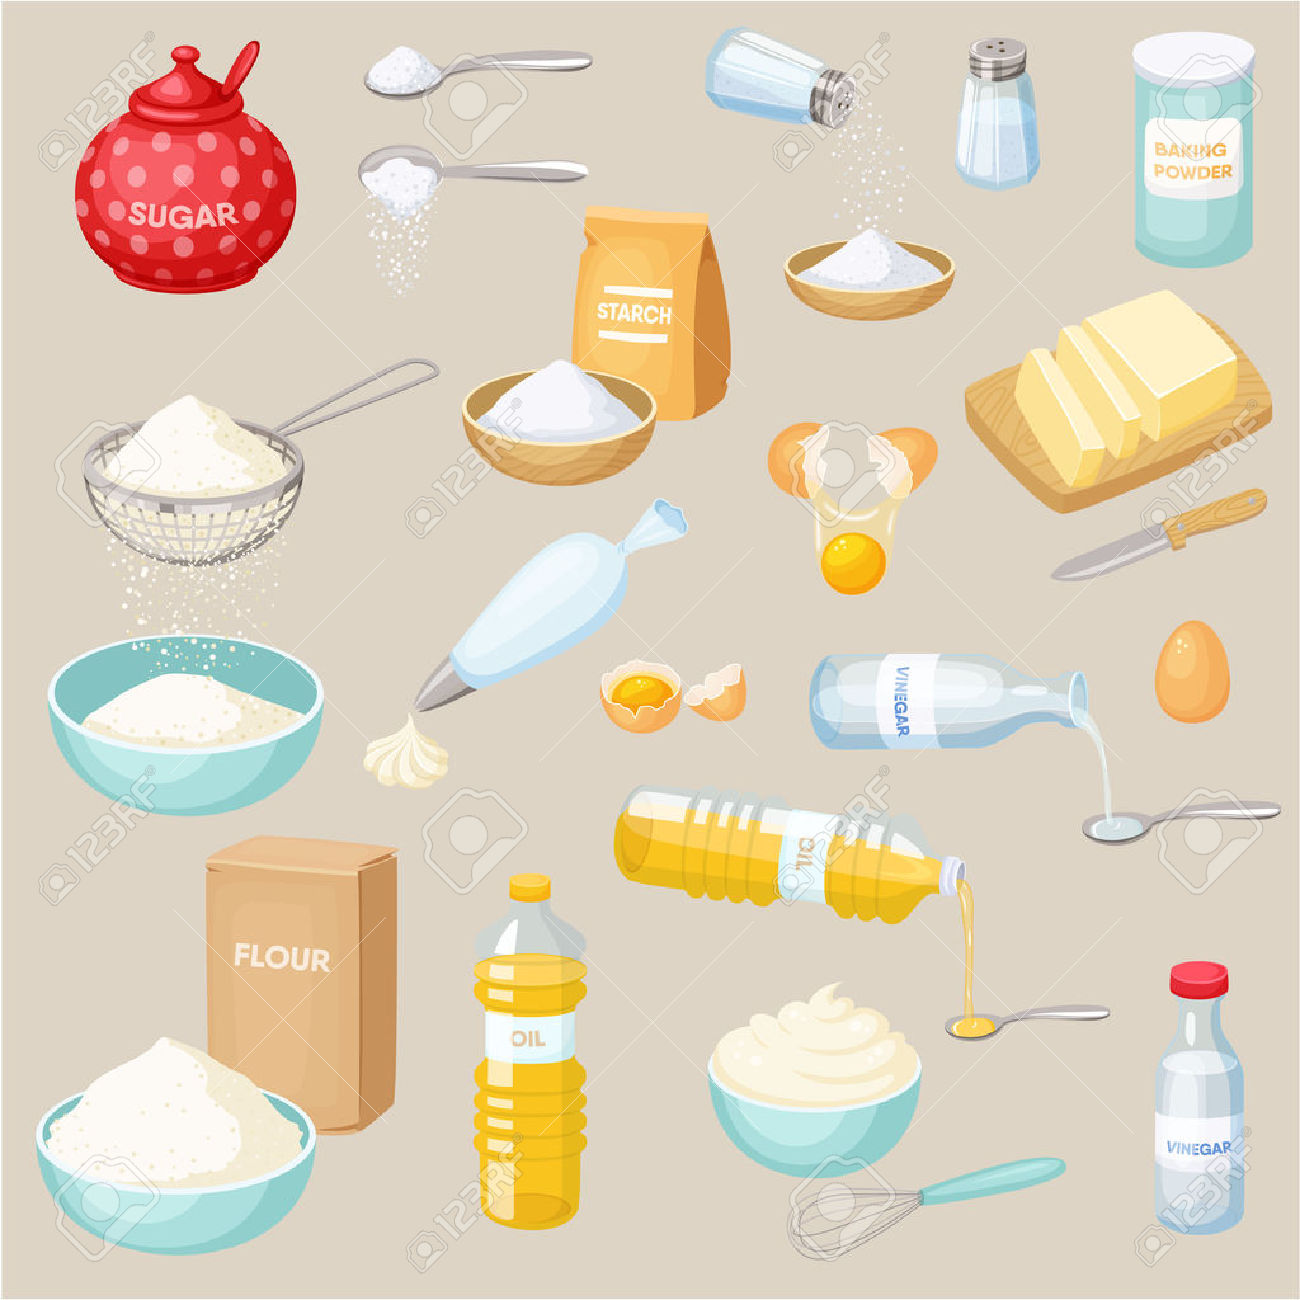 Baking Ingredients Set: Sugar, Salt, Flour, Starch, Oil, Butter.